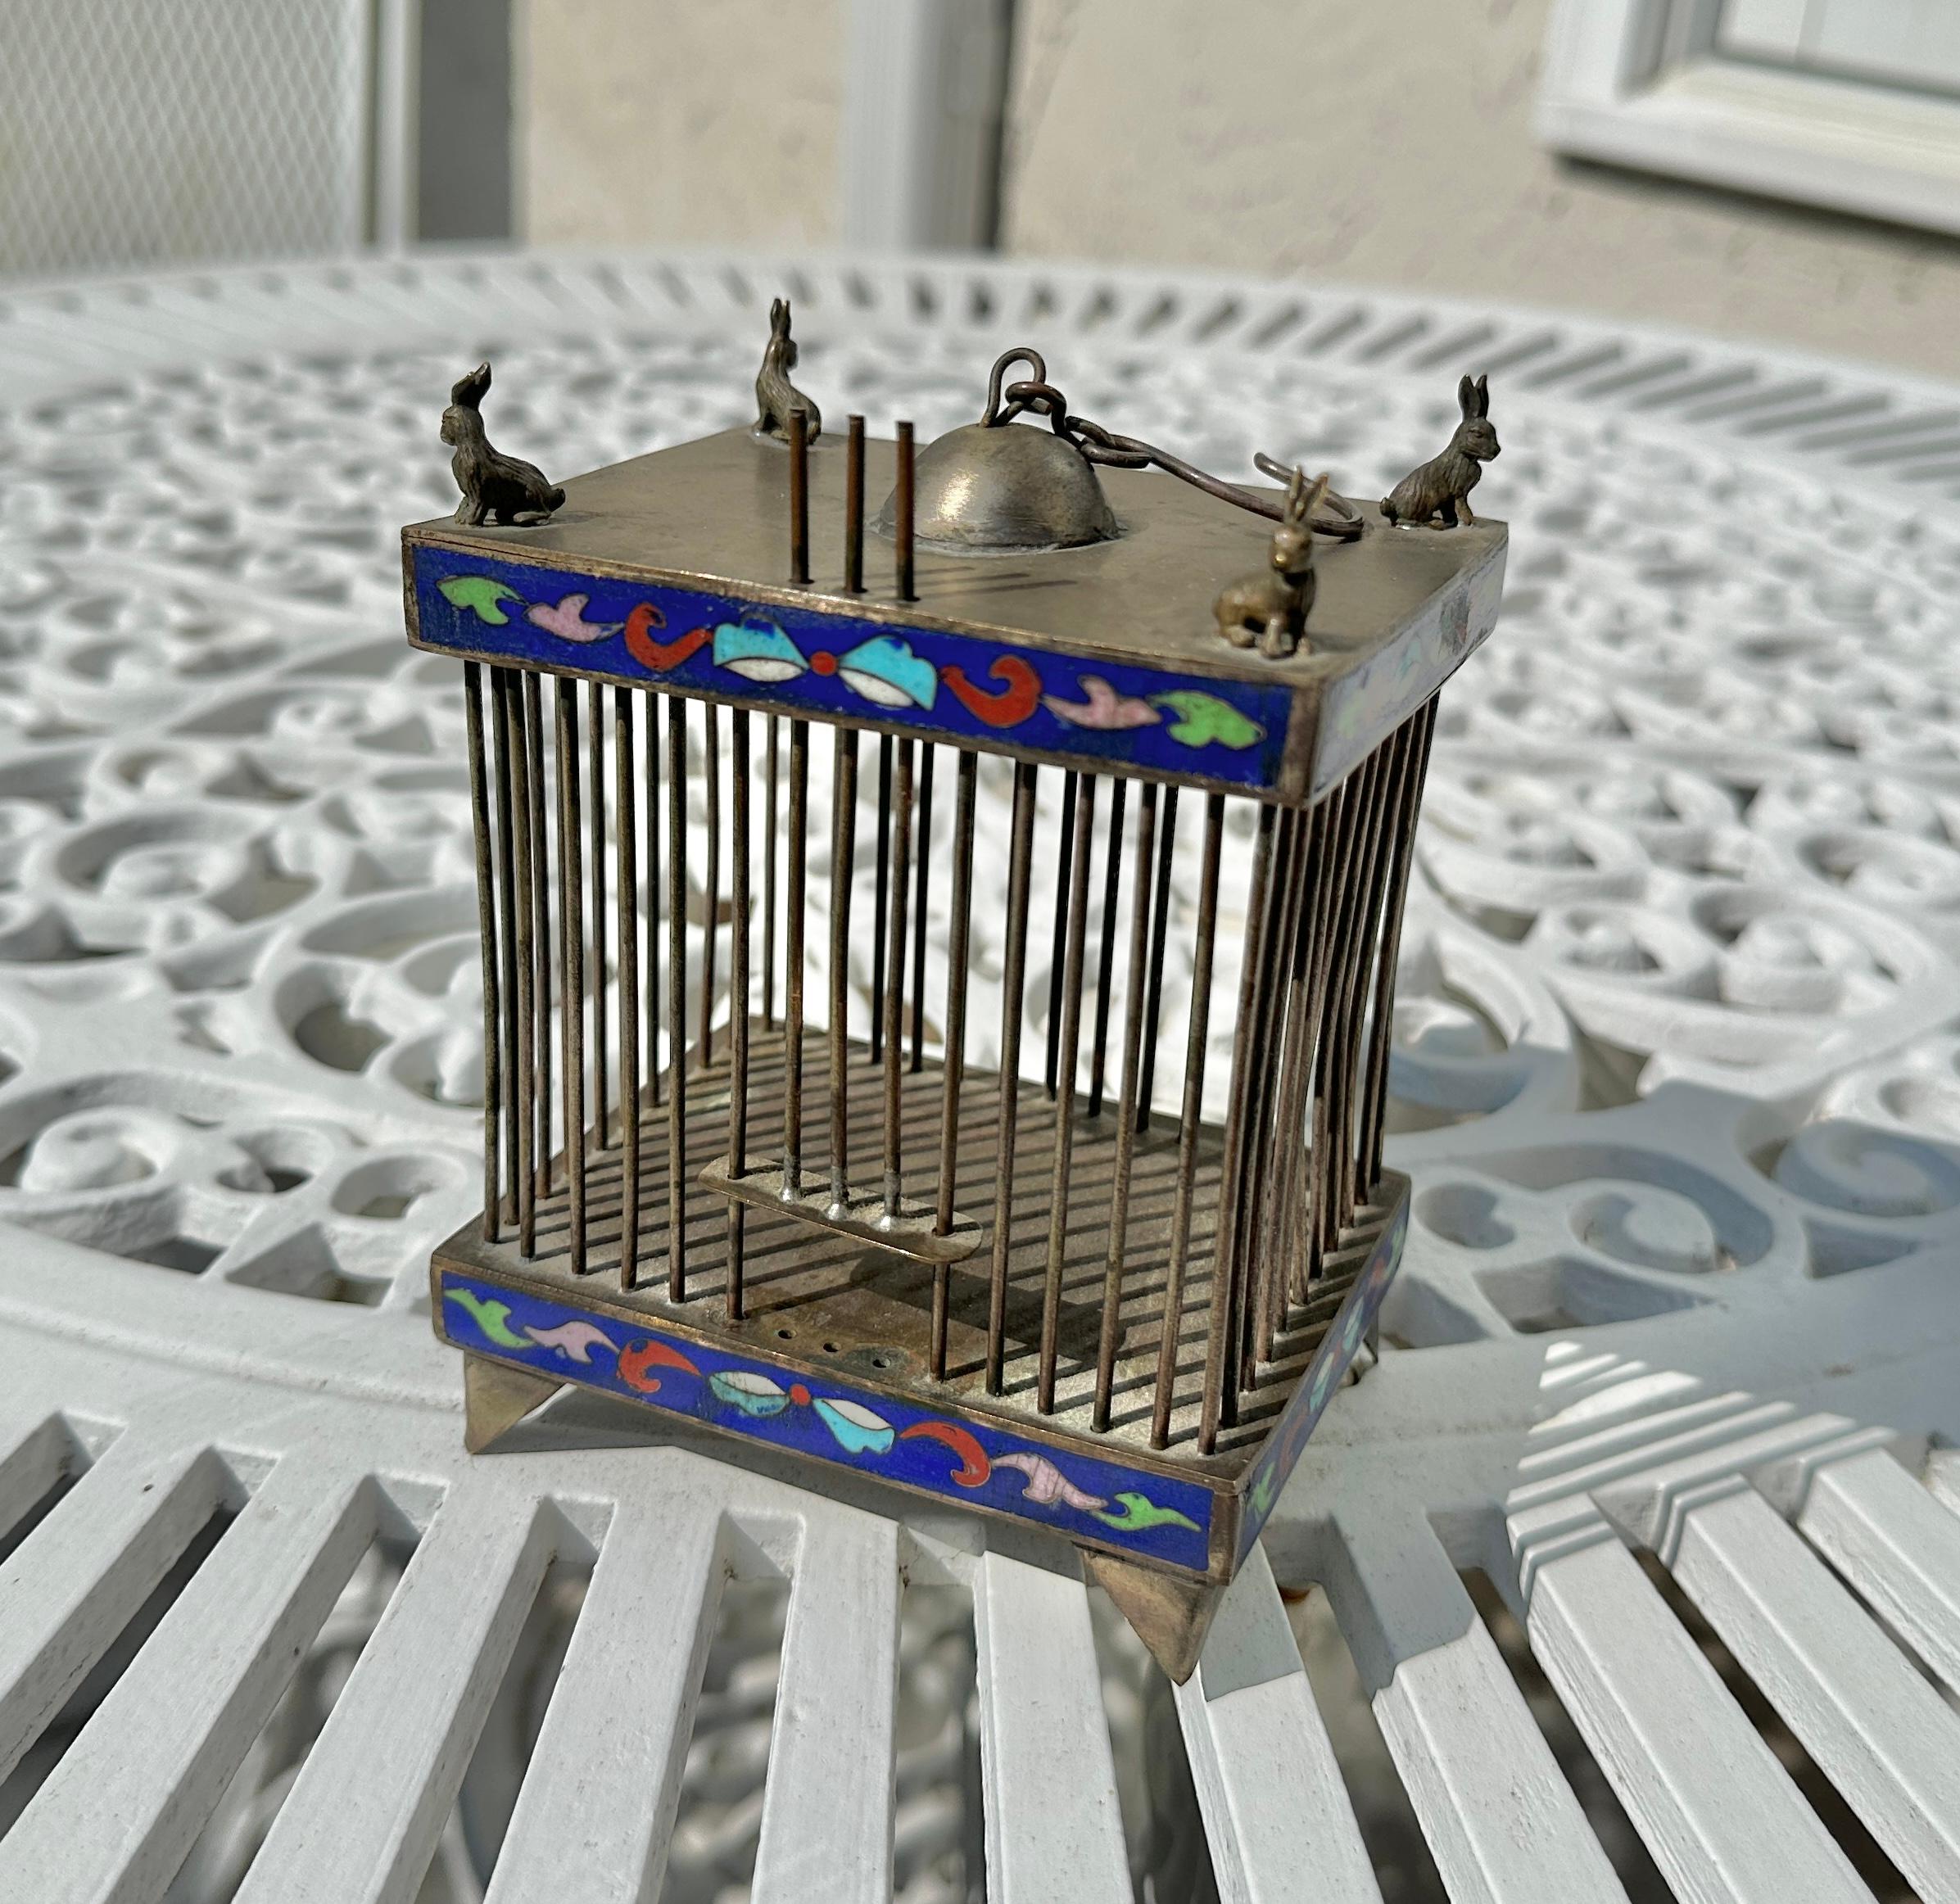 Il s'agit d'une fantastique cage à grillons chinoise antique du 19ème siècle décorée d'émail cloisonné avec des lapins en argent sur le dessus ! 
La cage est en argent avec de magnifiques décorations en émail cloisonné.  
La cage mesure 5,5 pouces